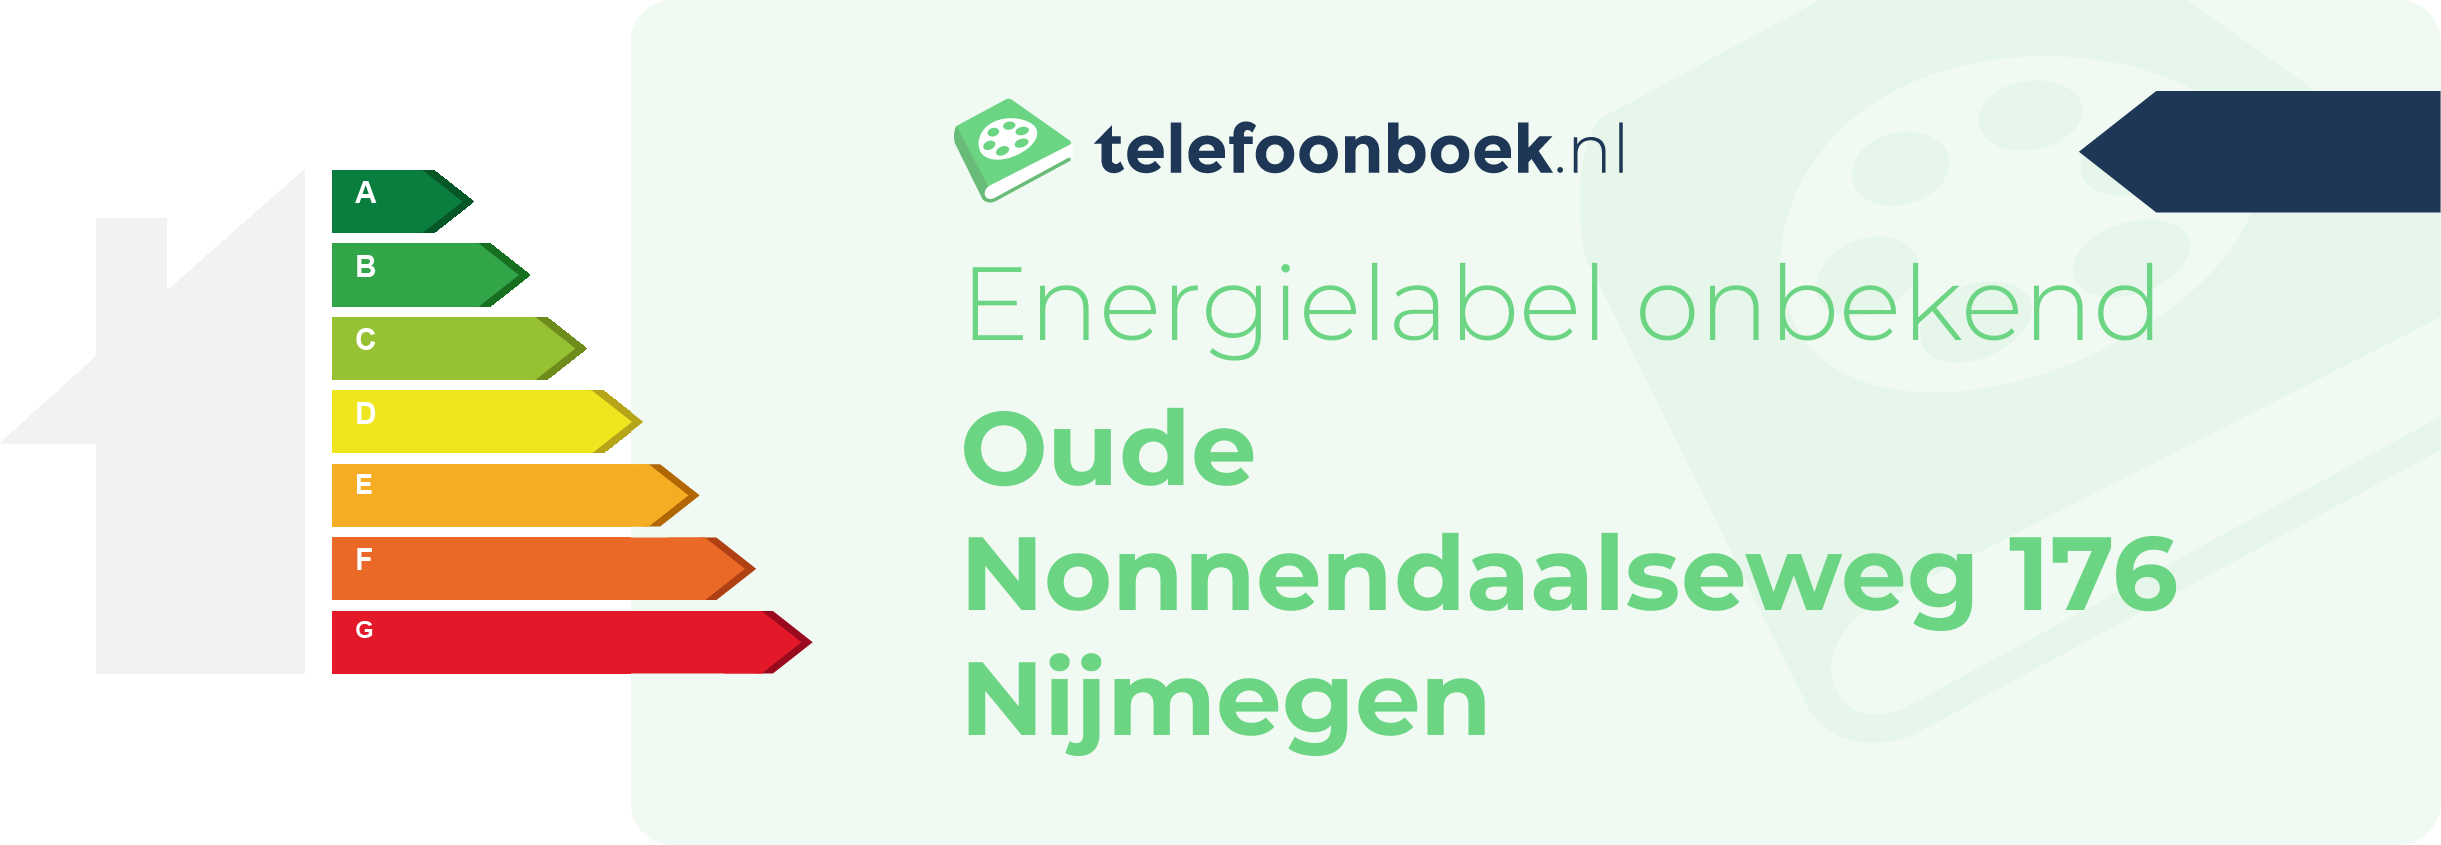 Energielabel Oude Nonnendaalseweg 176 Nijmegen